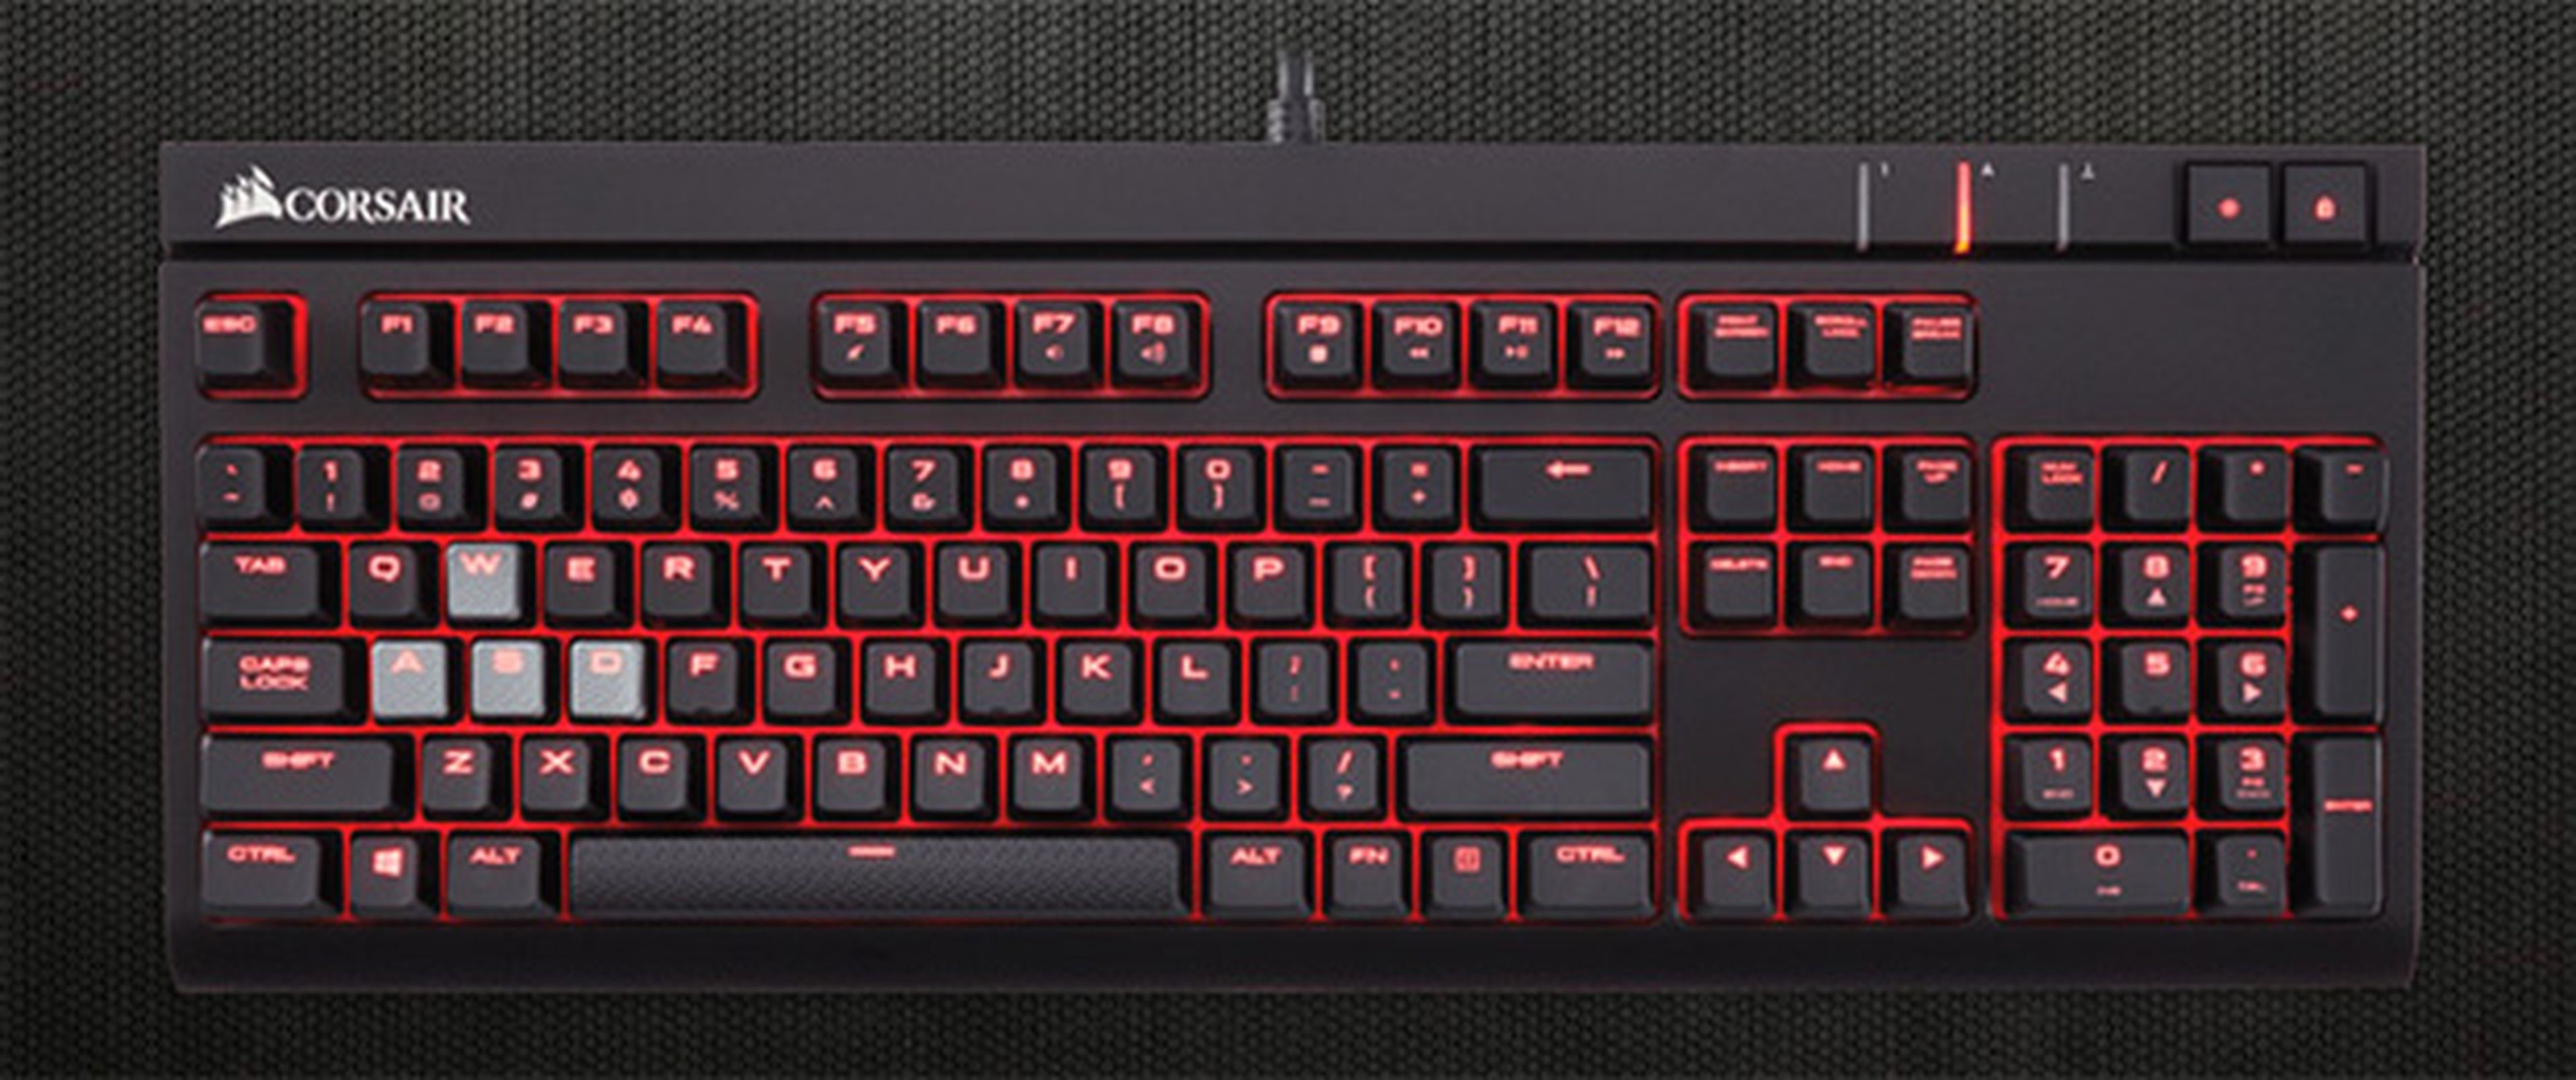 Oferta teclado gaming